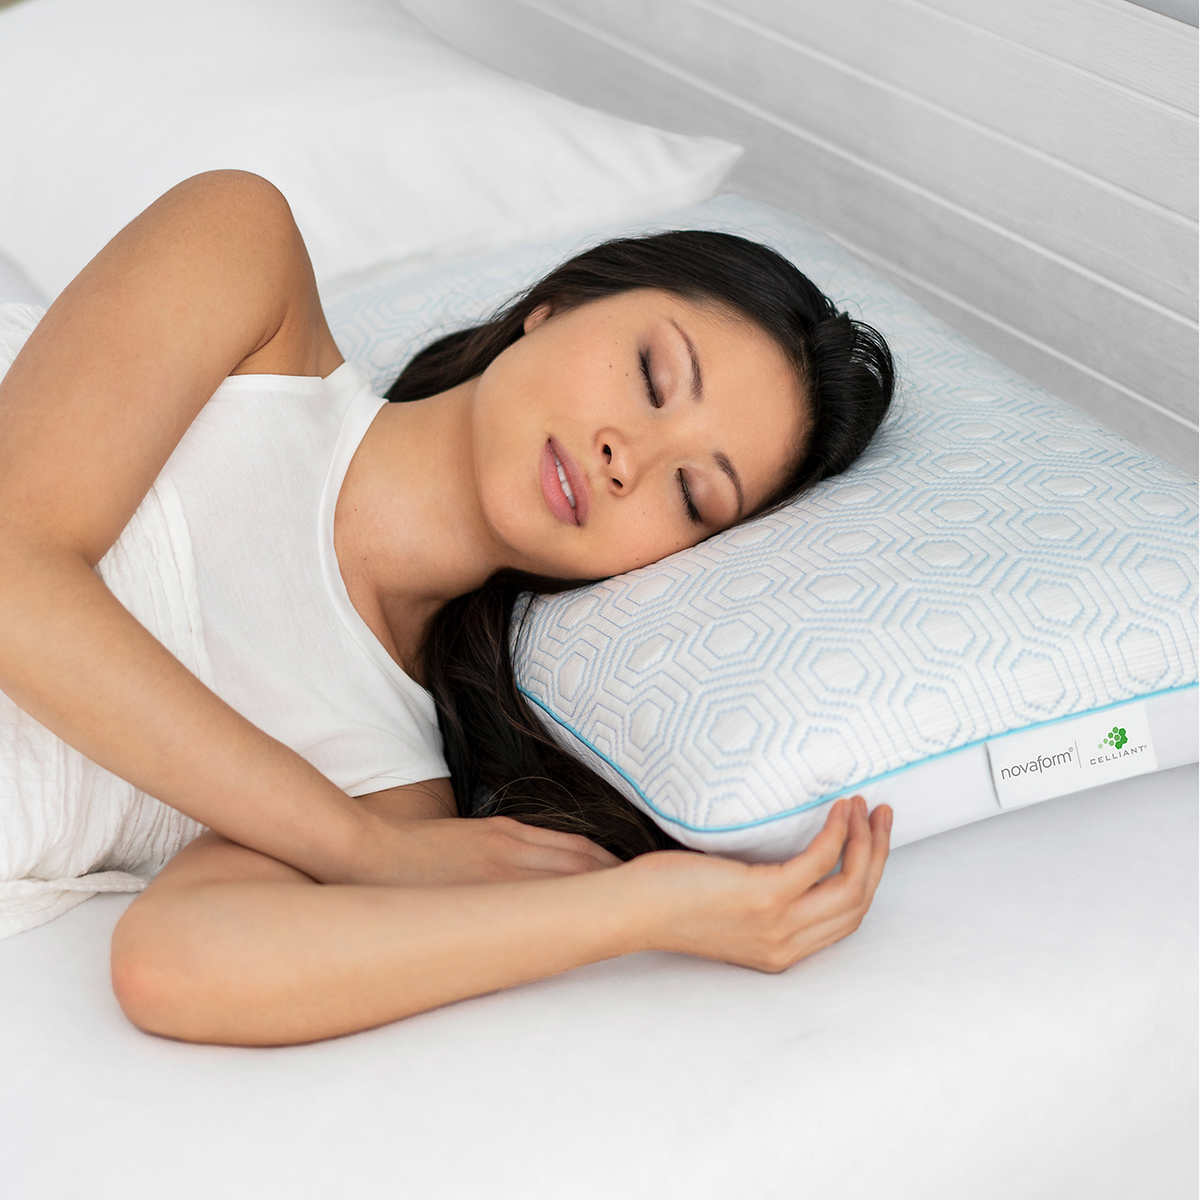 Innocor comfort by serta gel memory foam side sleeper pillow